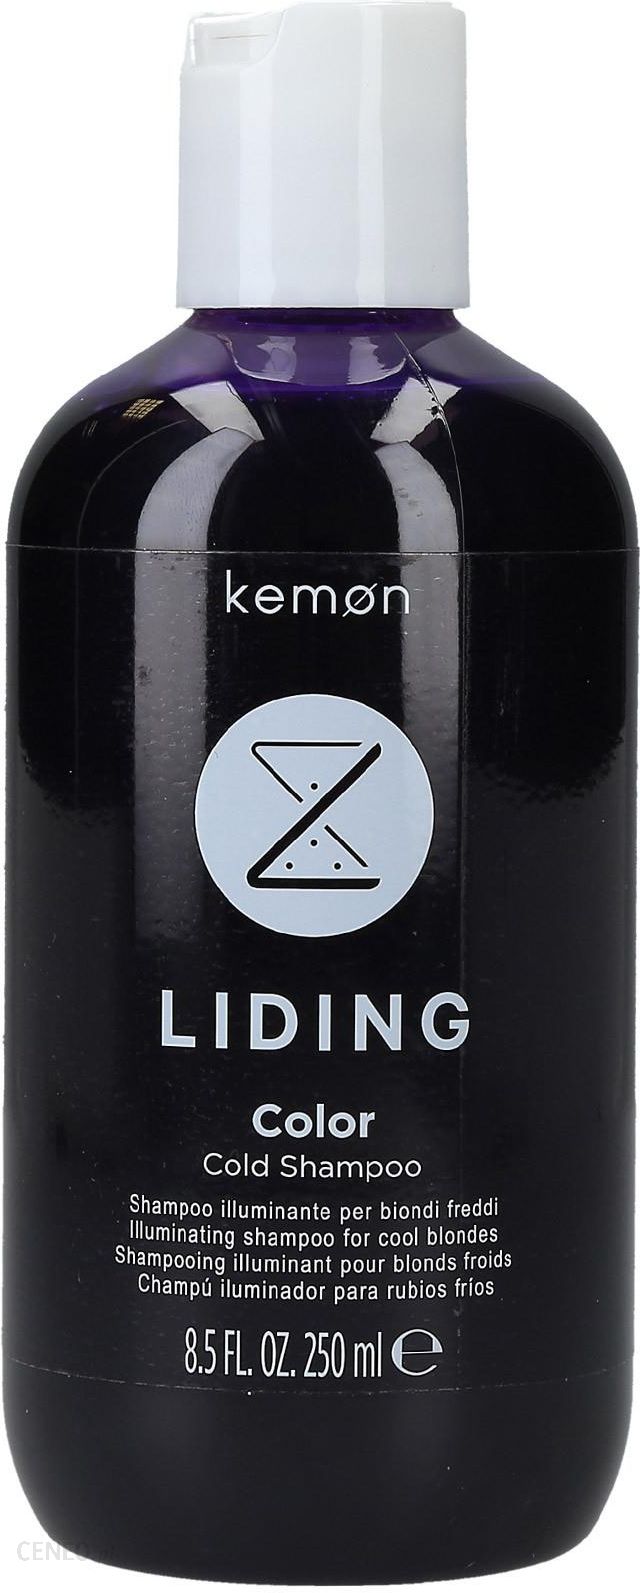 kemon liding szampon opinie